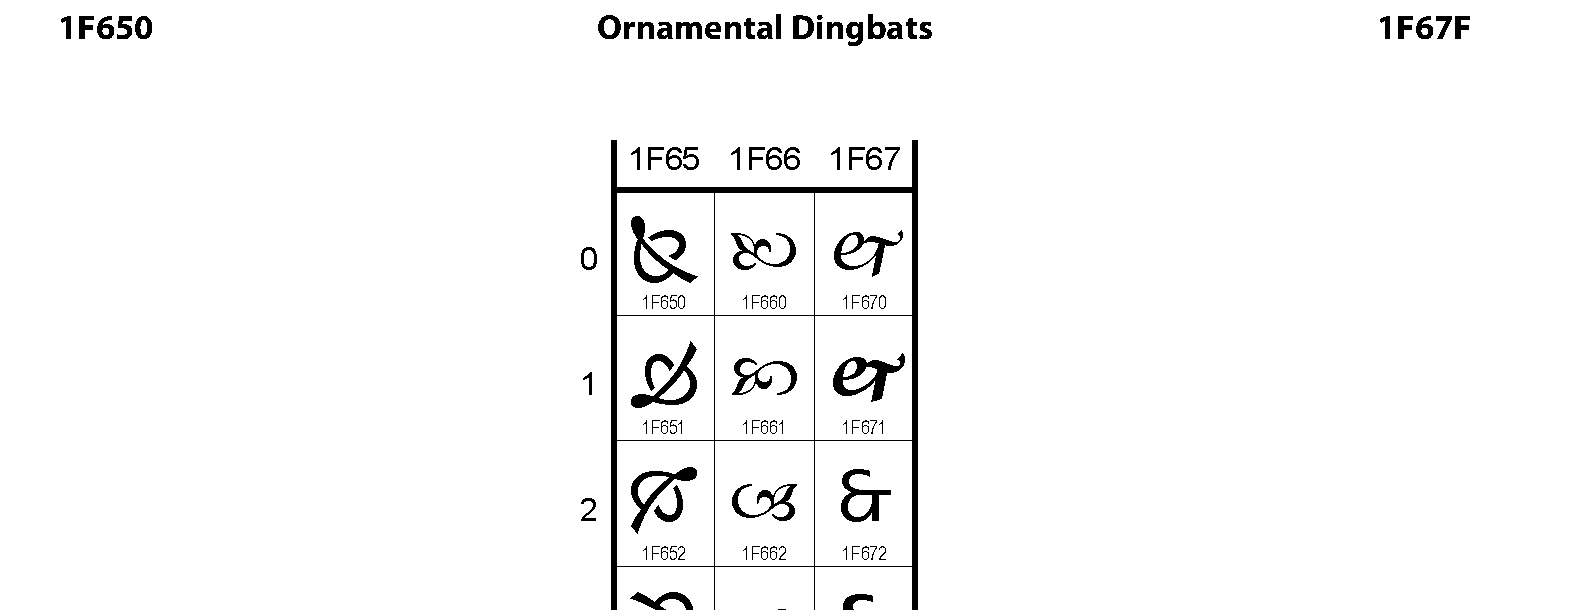 1f650-ornamental-dingbats